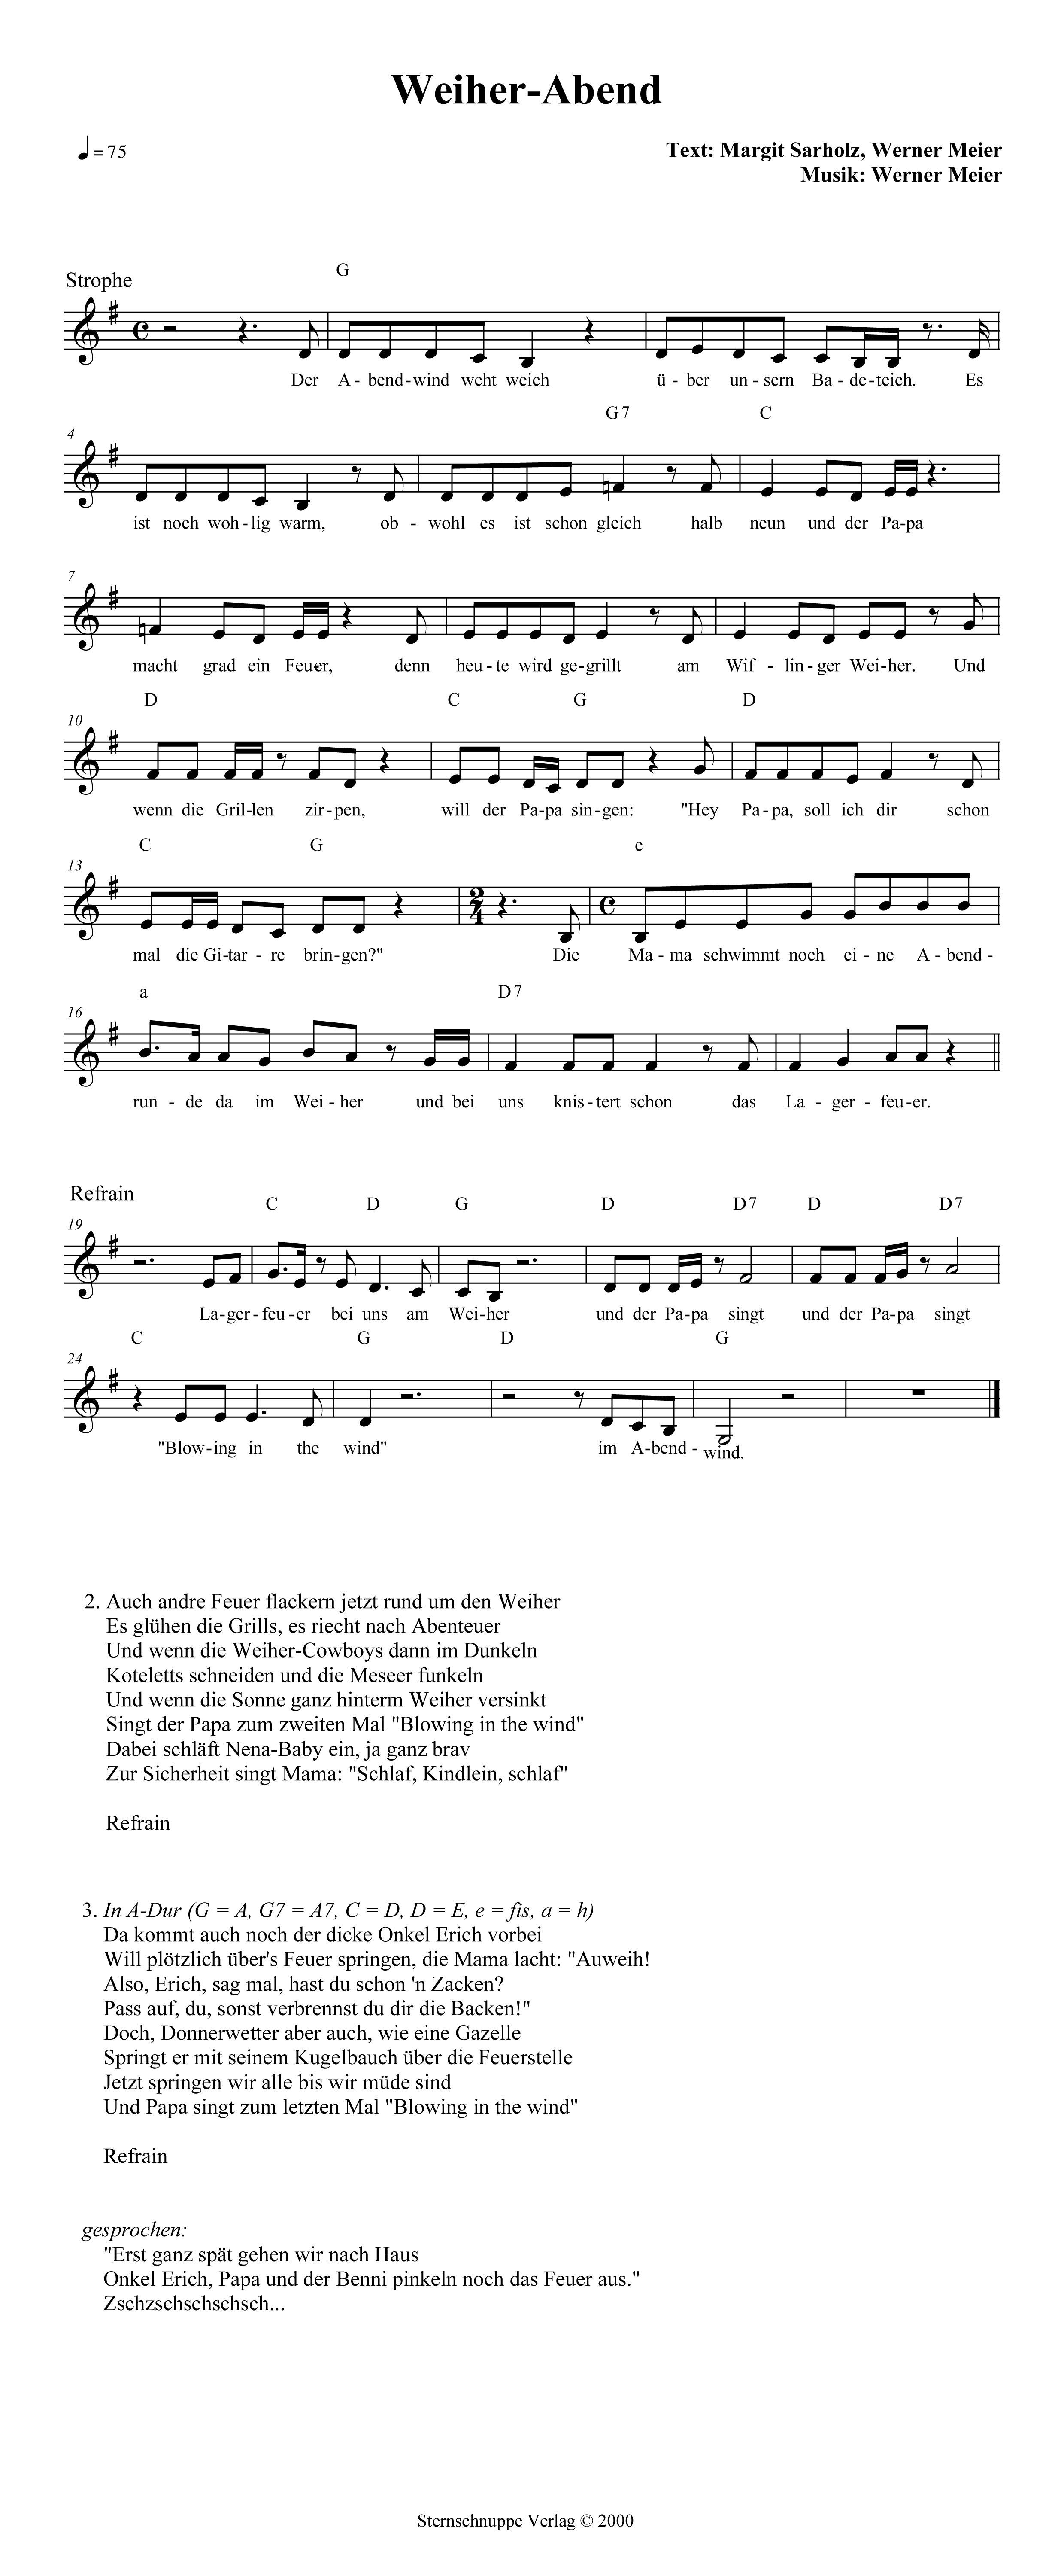 Liedtext, Akkorde und Noten vom Kinderlied Weiher-Abend